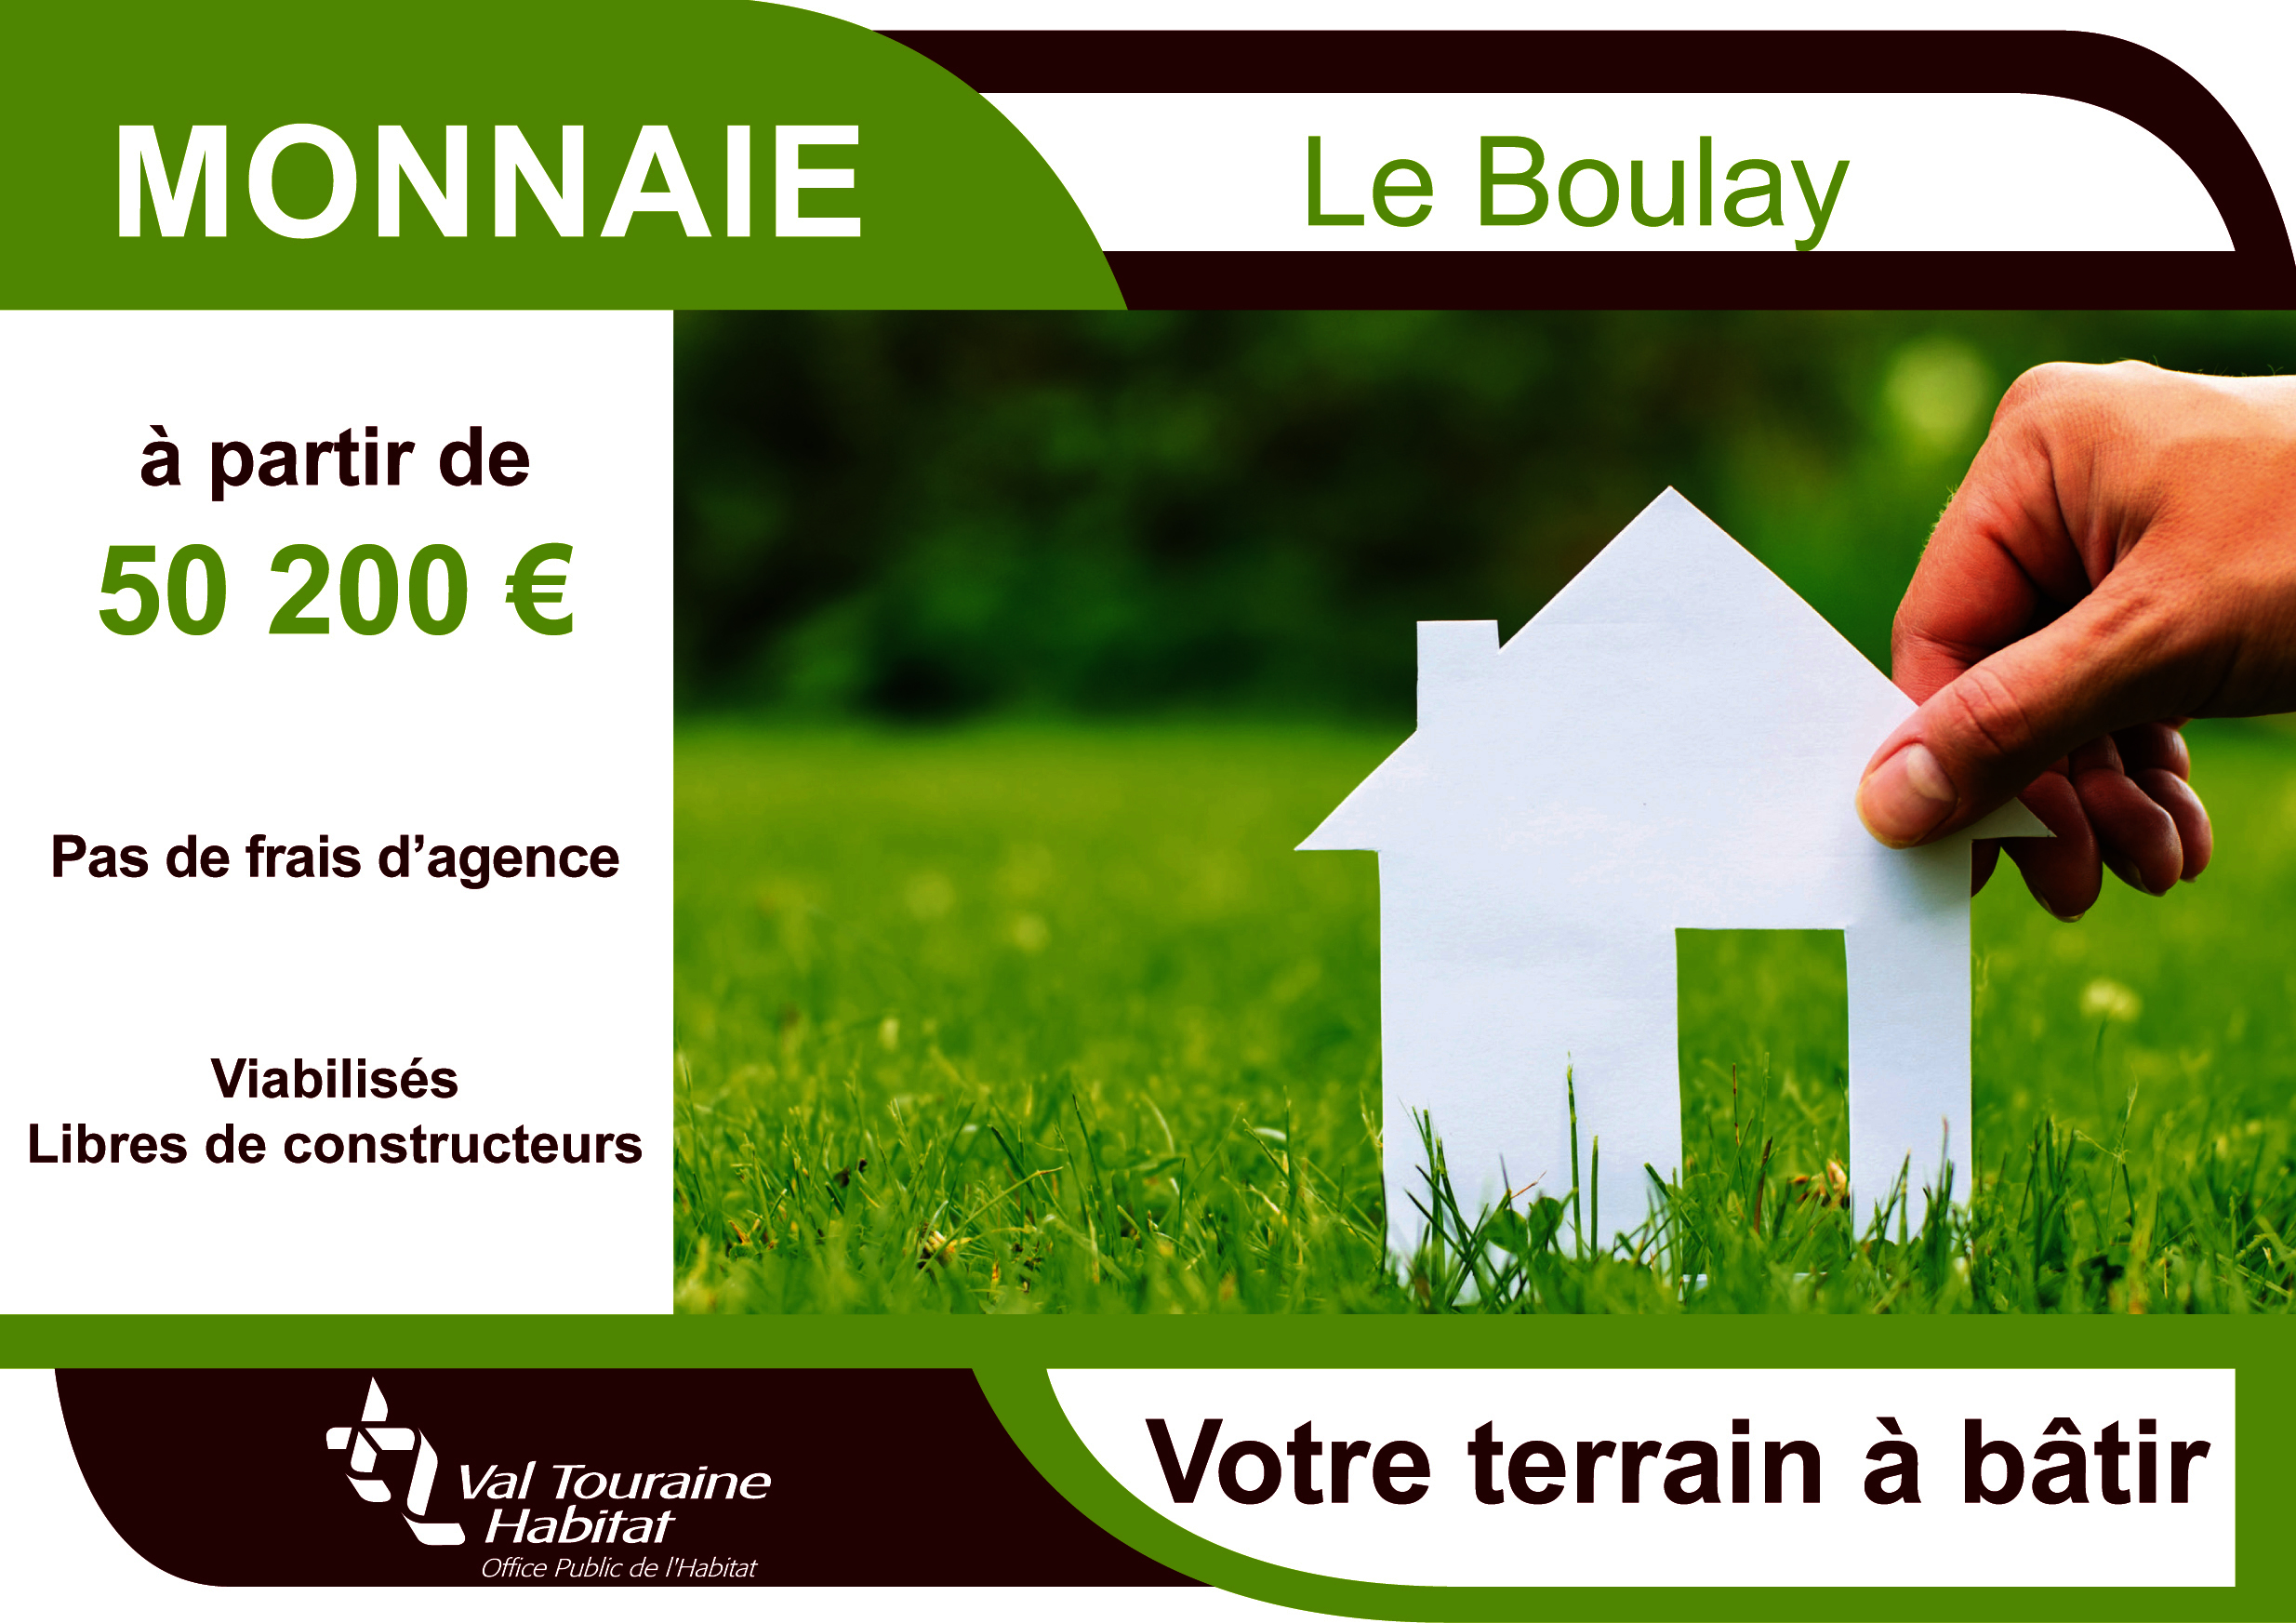 Plaquette de Monnaie-Le Boulay